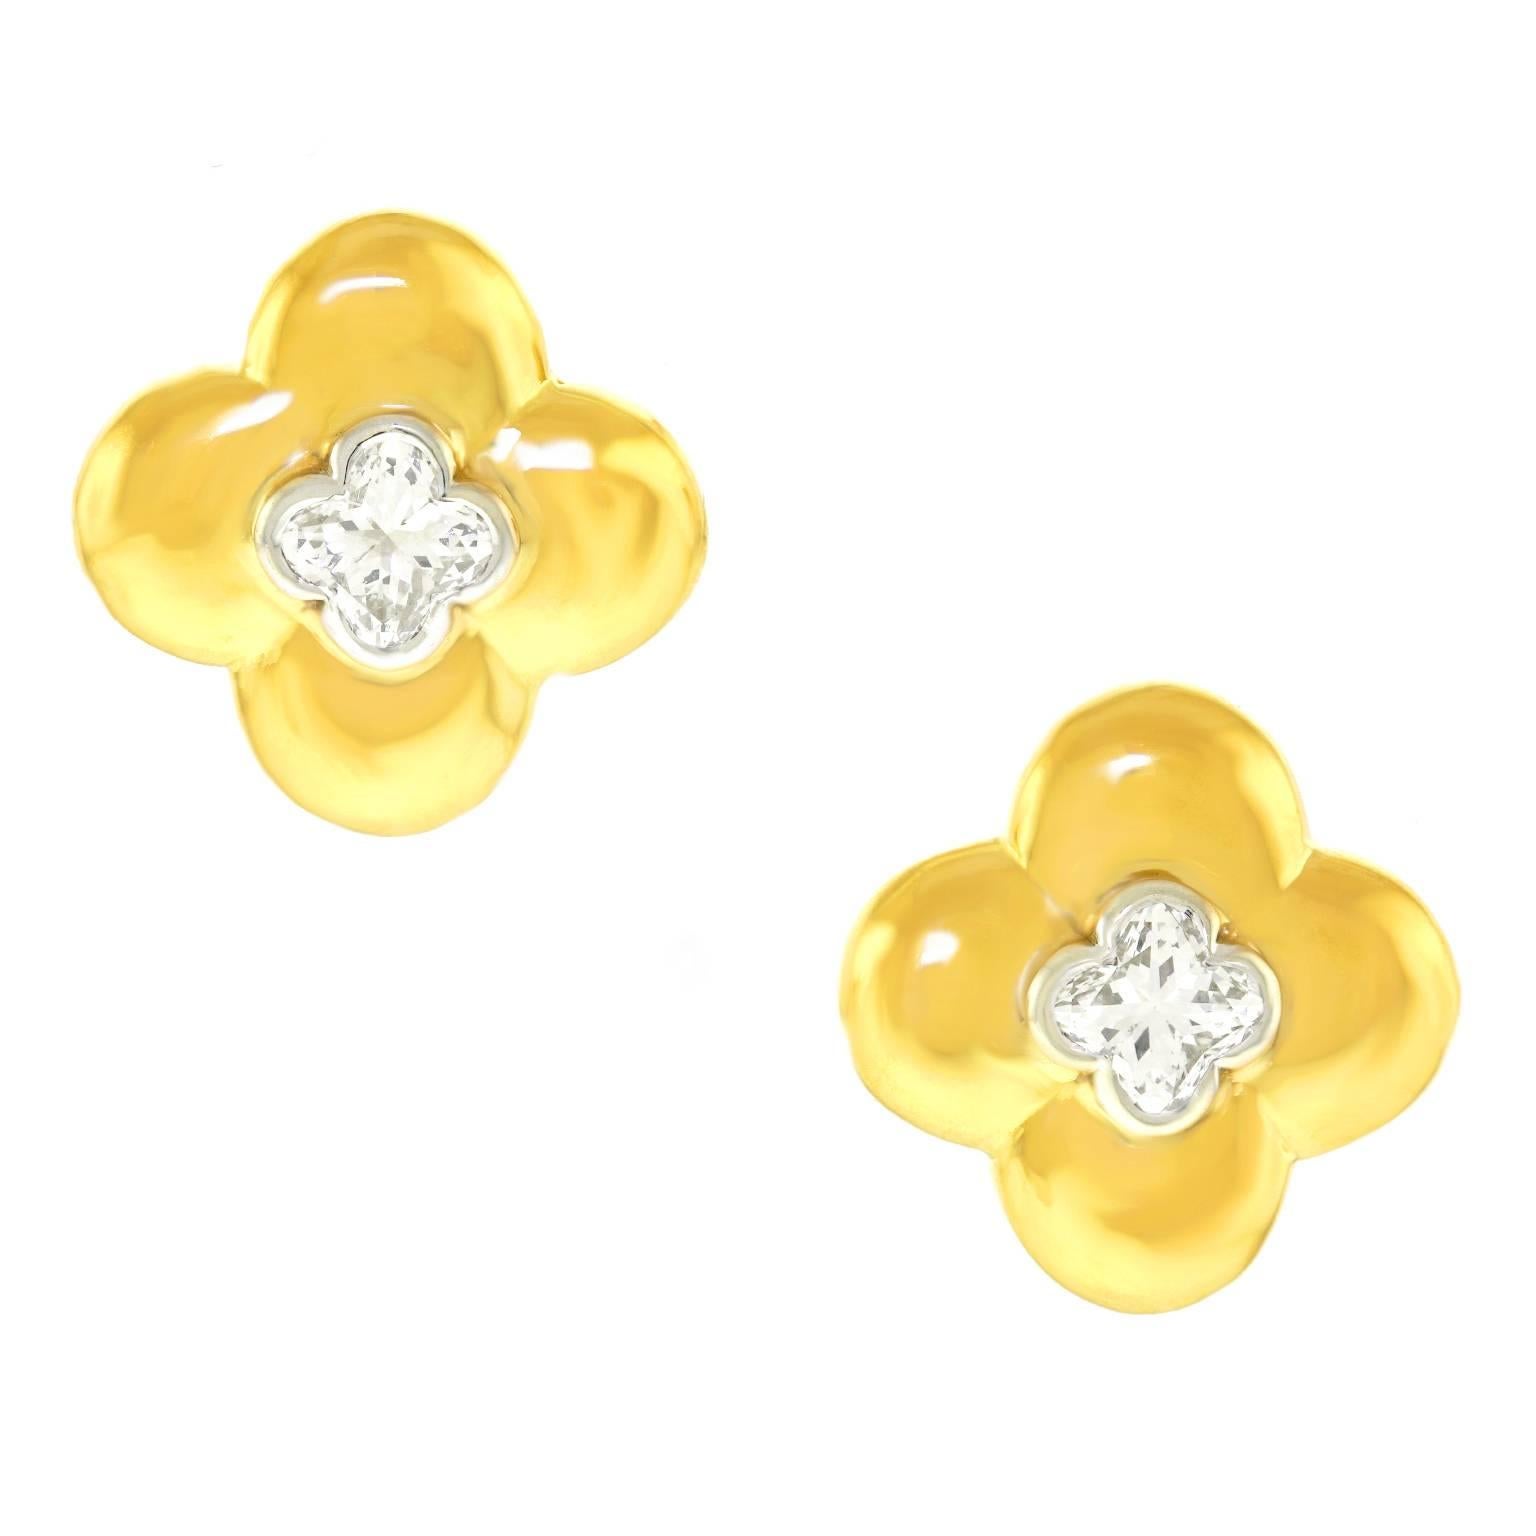 Stunning Clover-Cut Diamonds in Gold Clover Motif Earrings 4